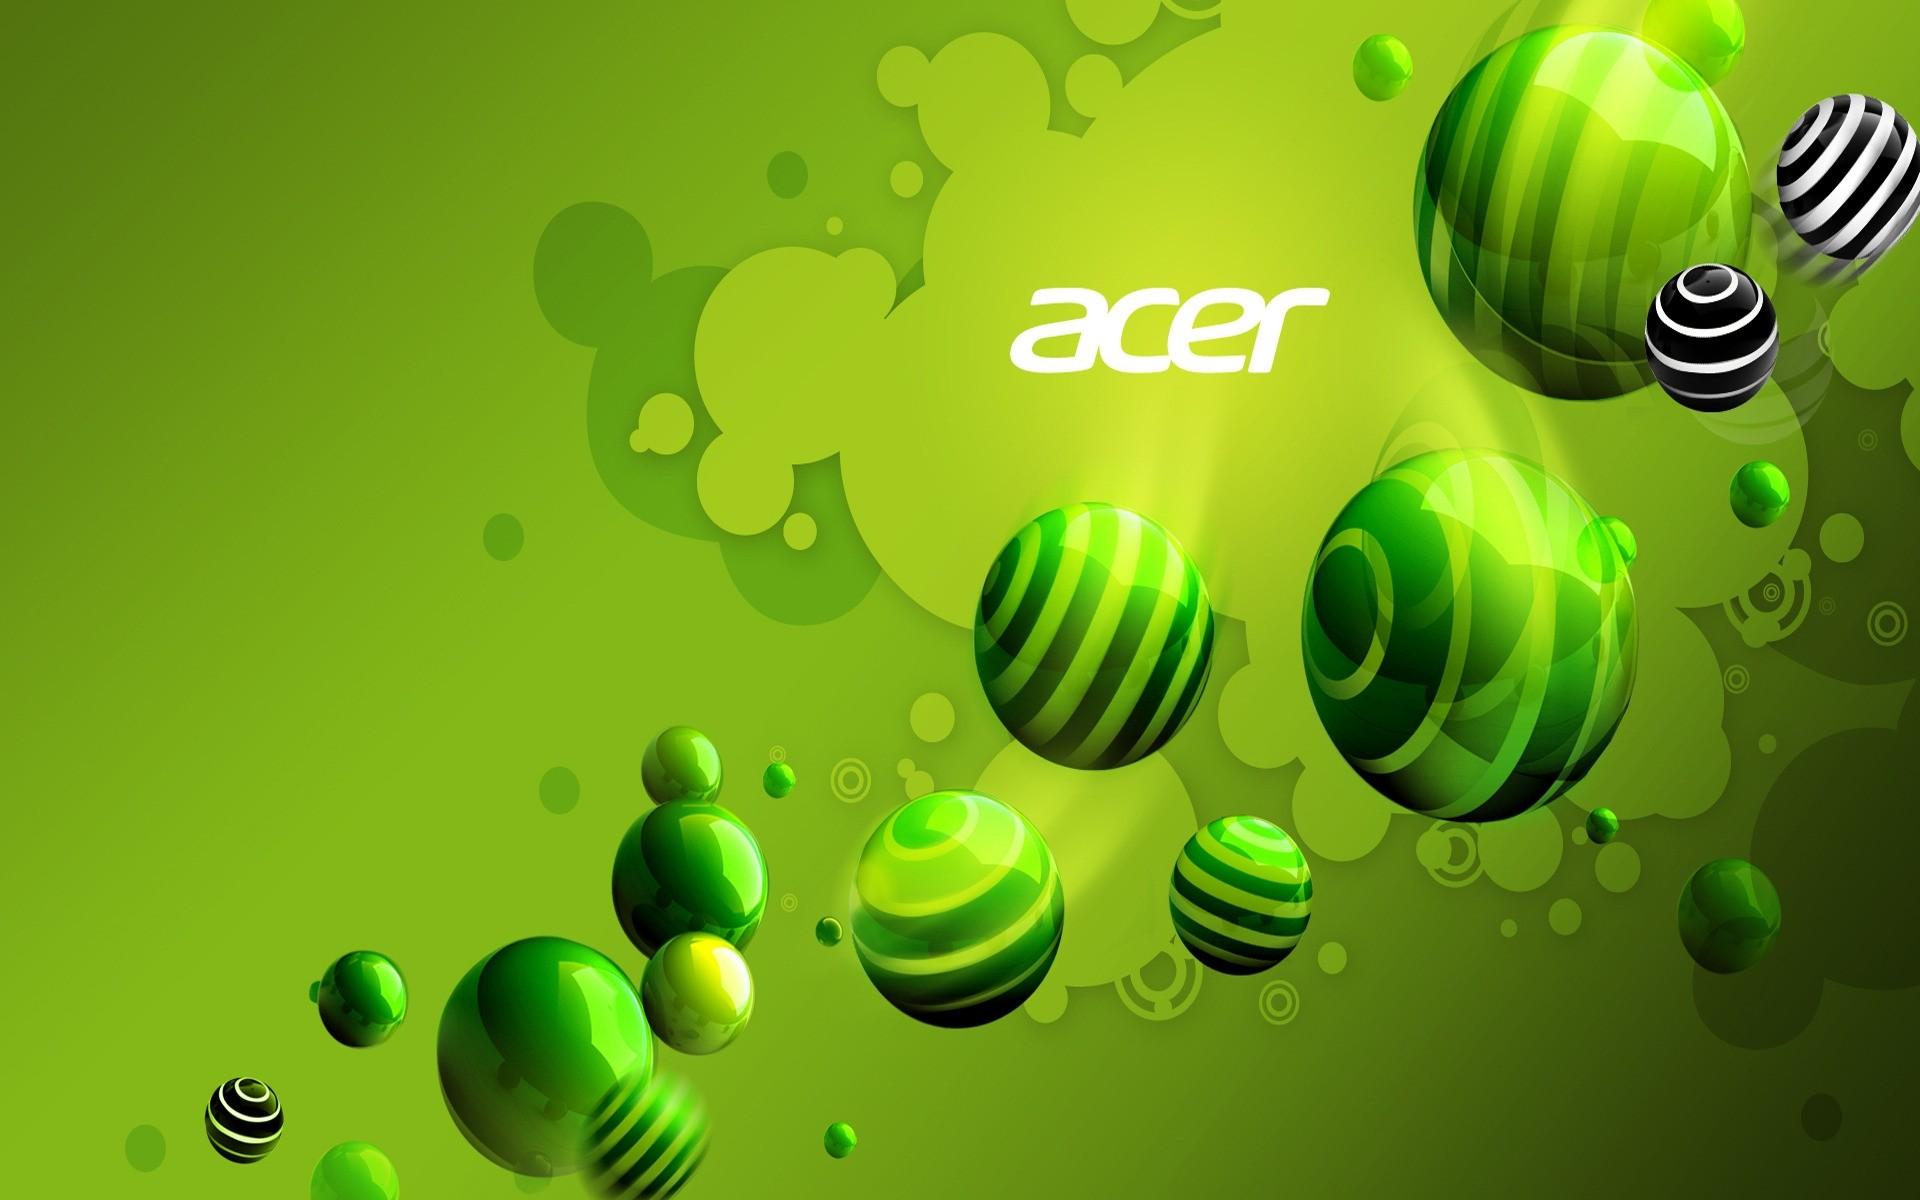 Acer Green World